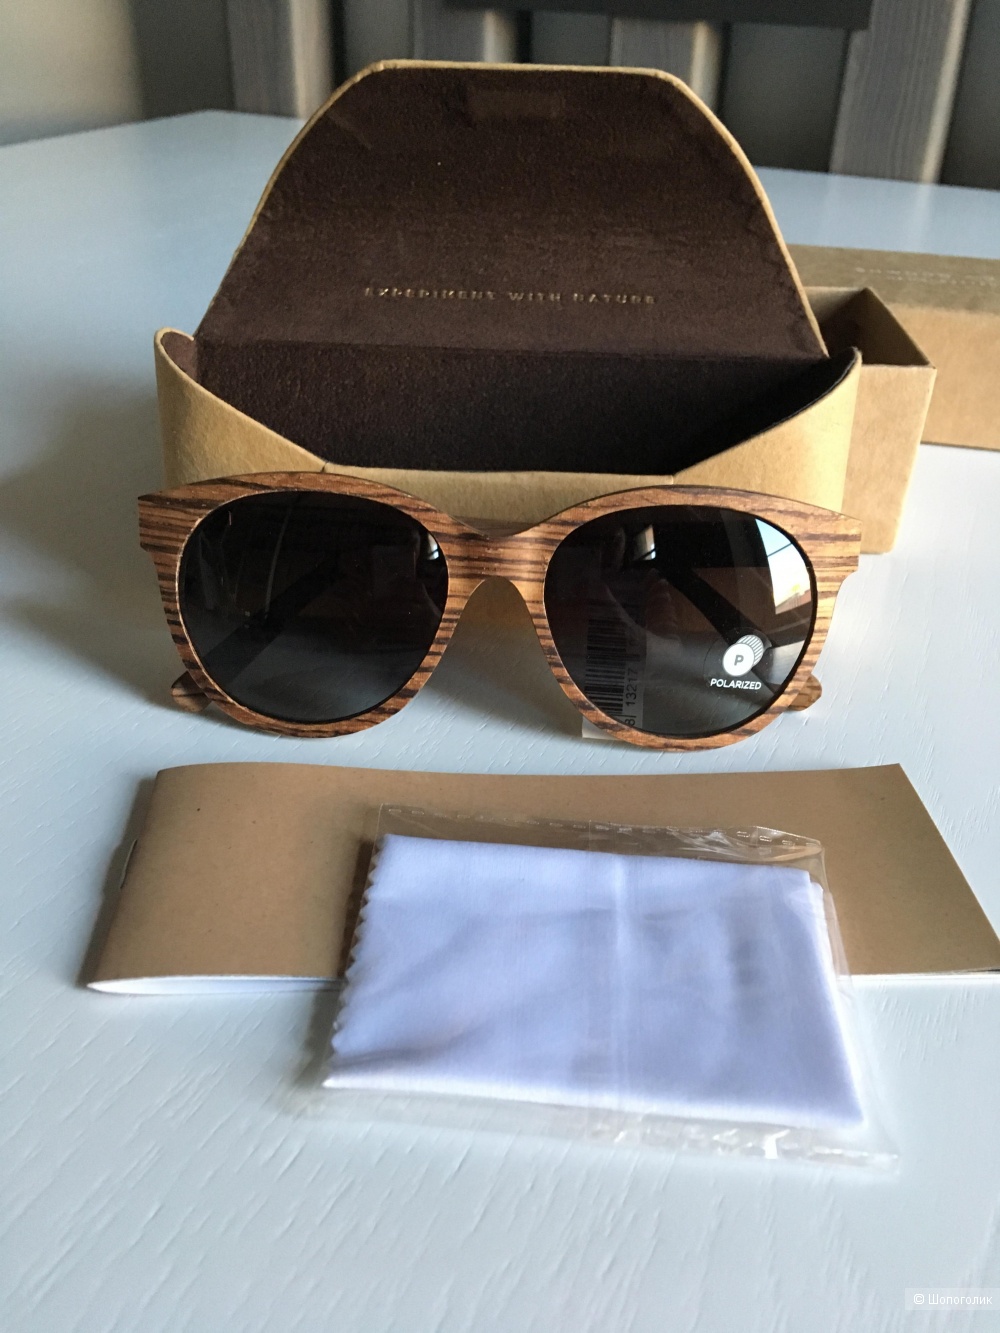 Солнечные очки в деревянной оправе Shwood